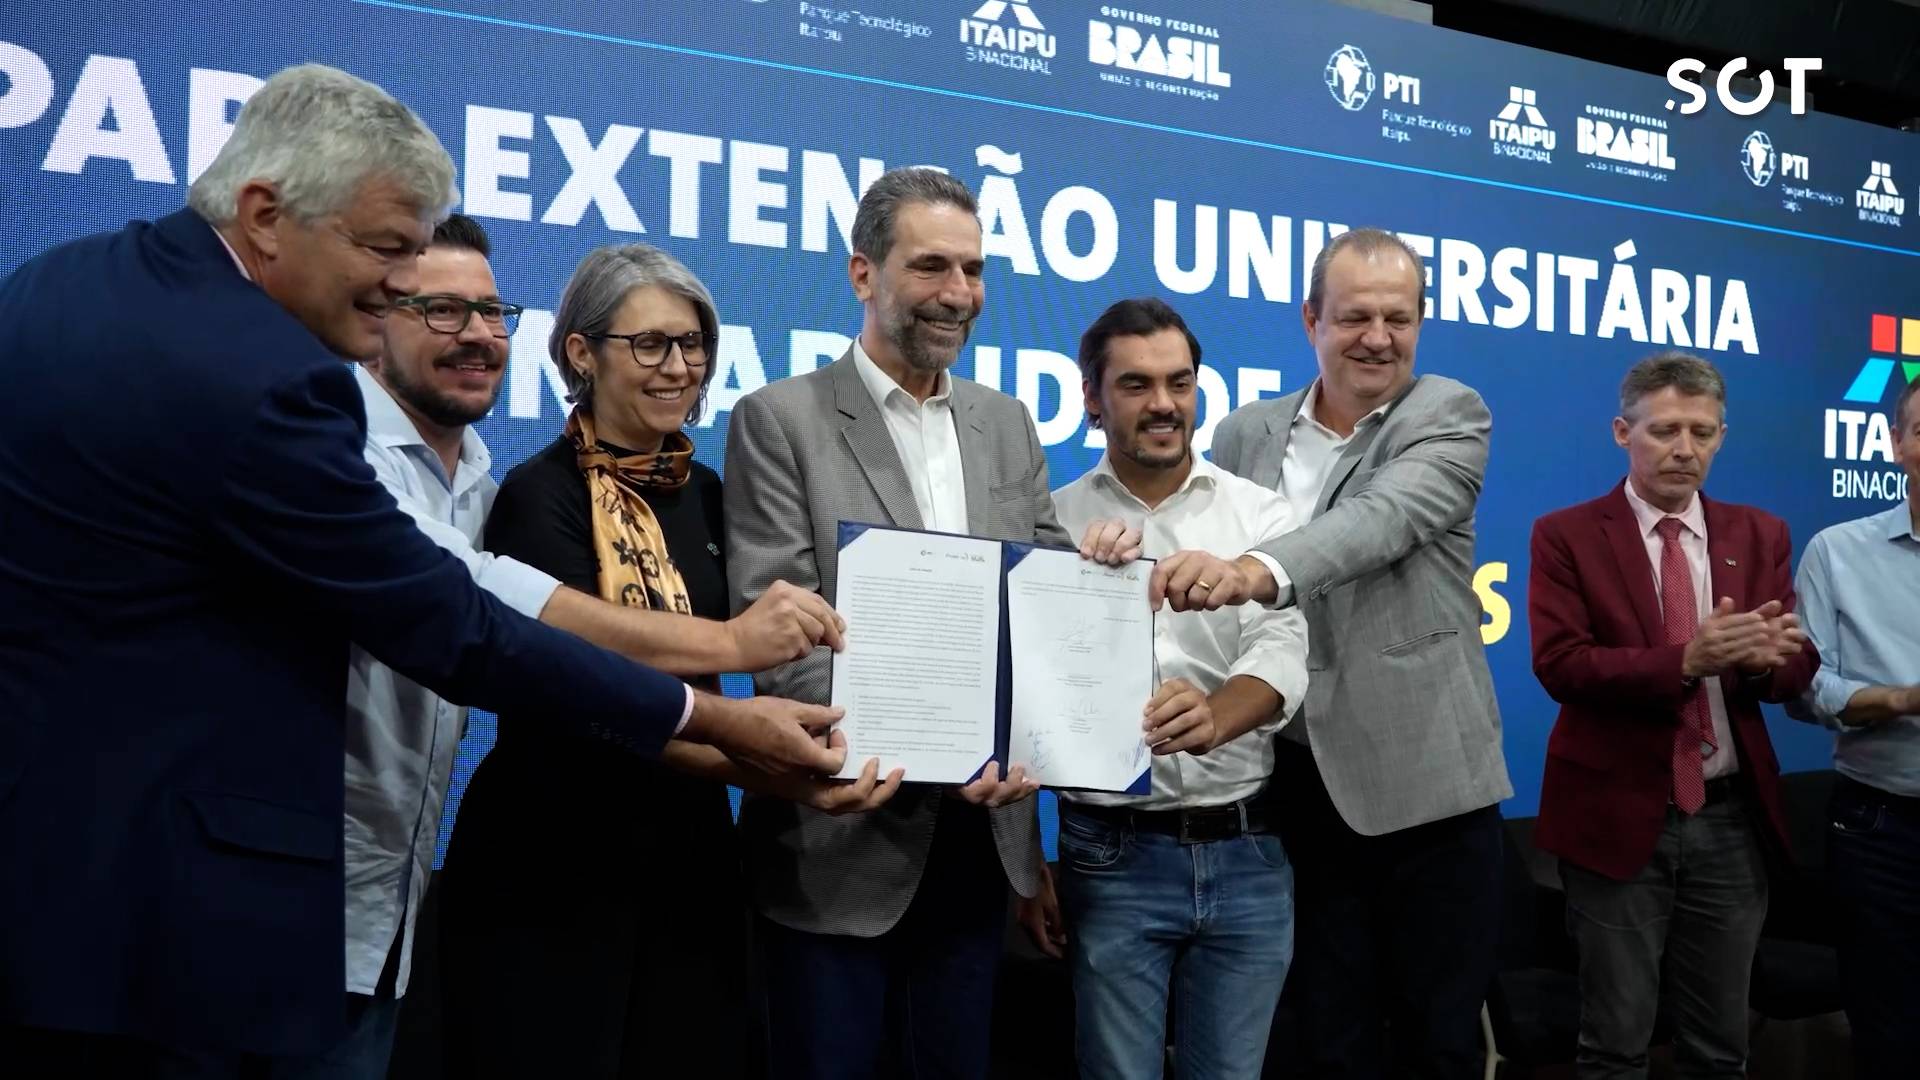 Itaipu lança Programa de Extensão para Sustentabilidade Territorial em parceria com universidades